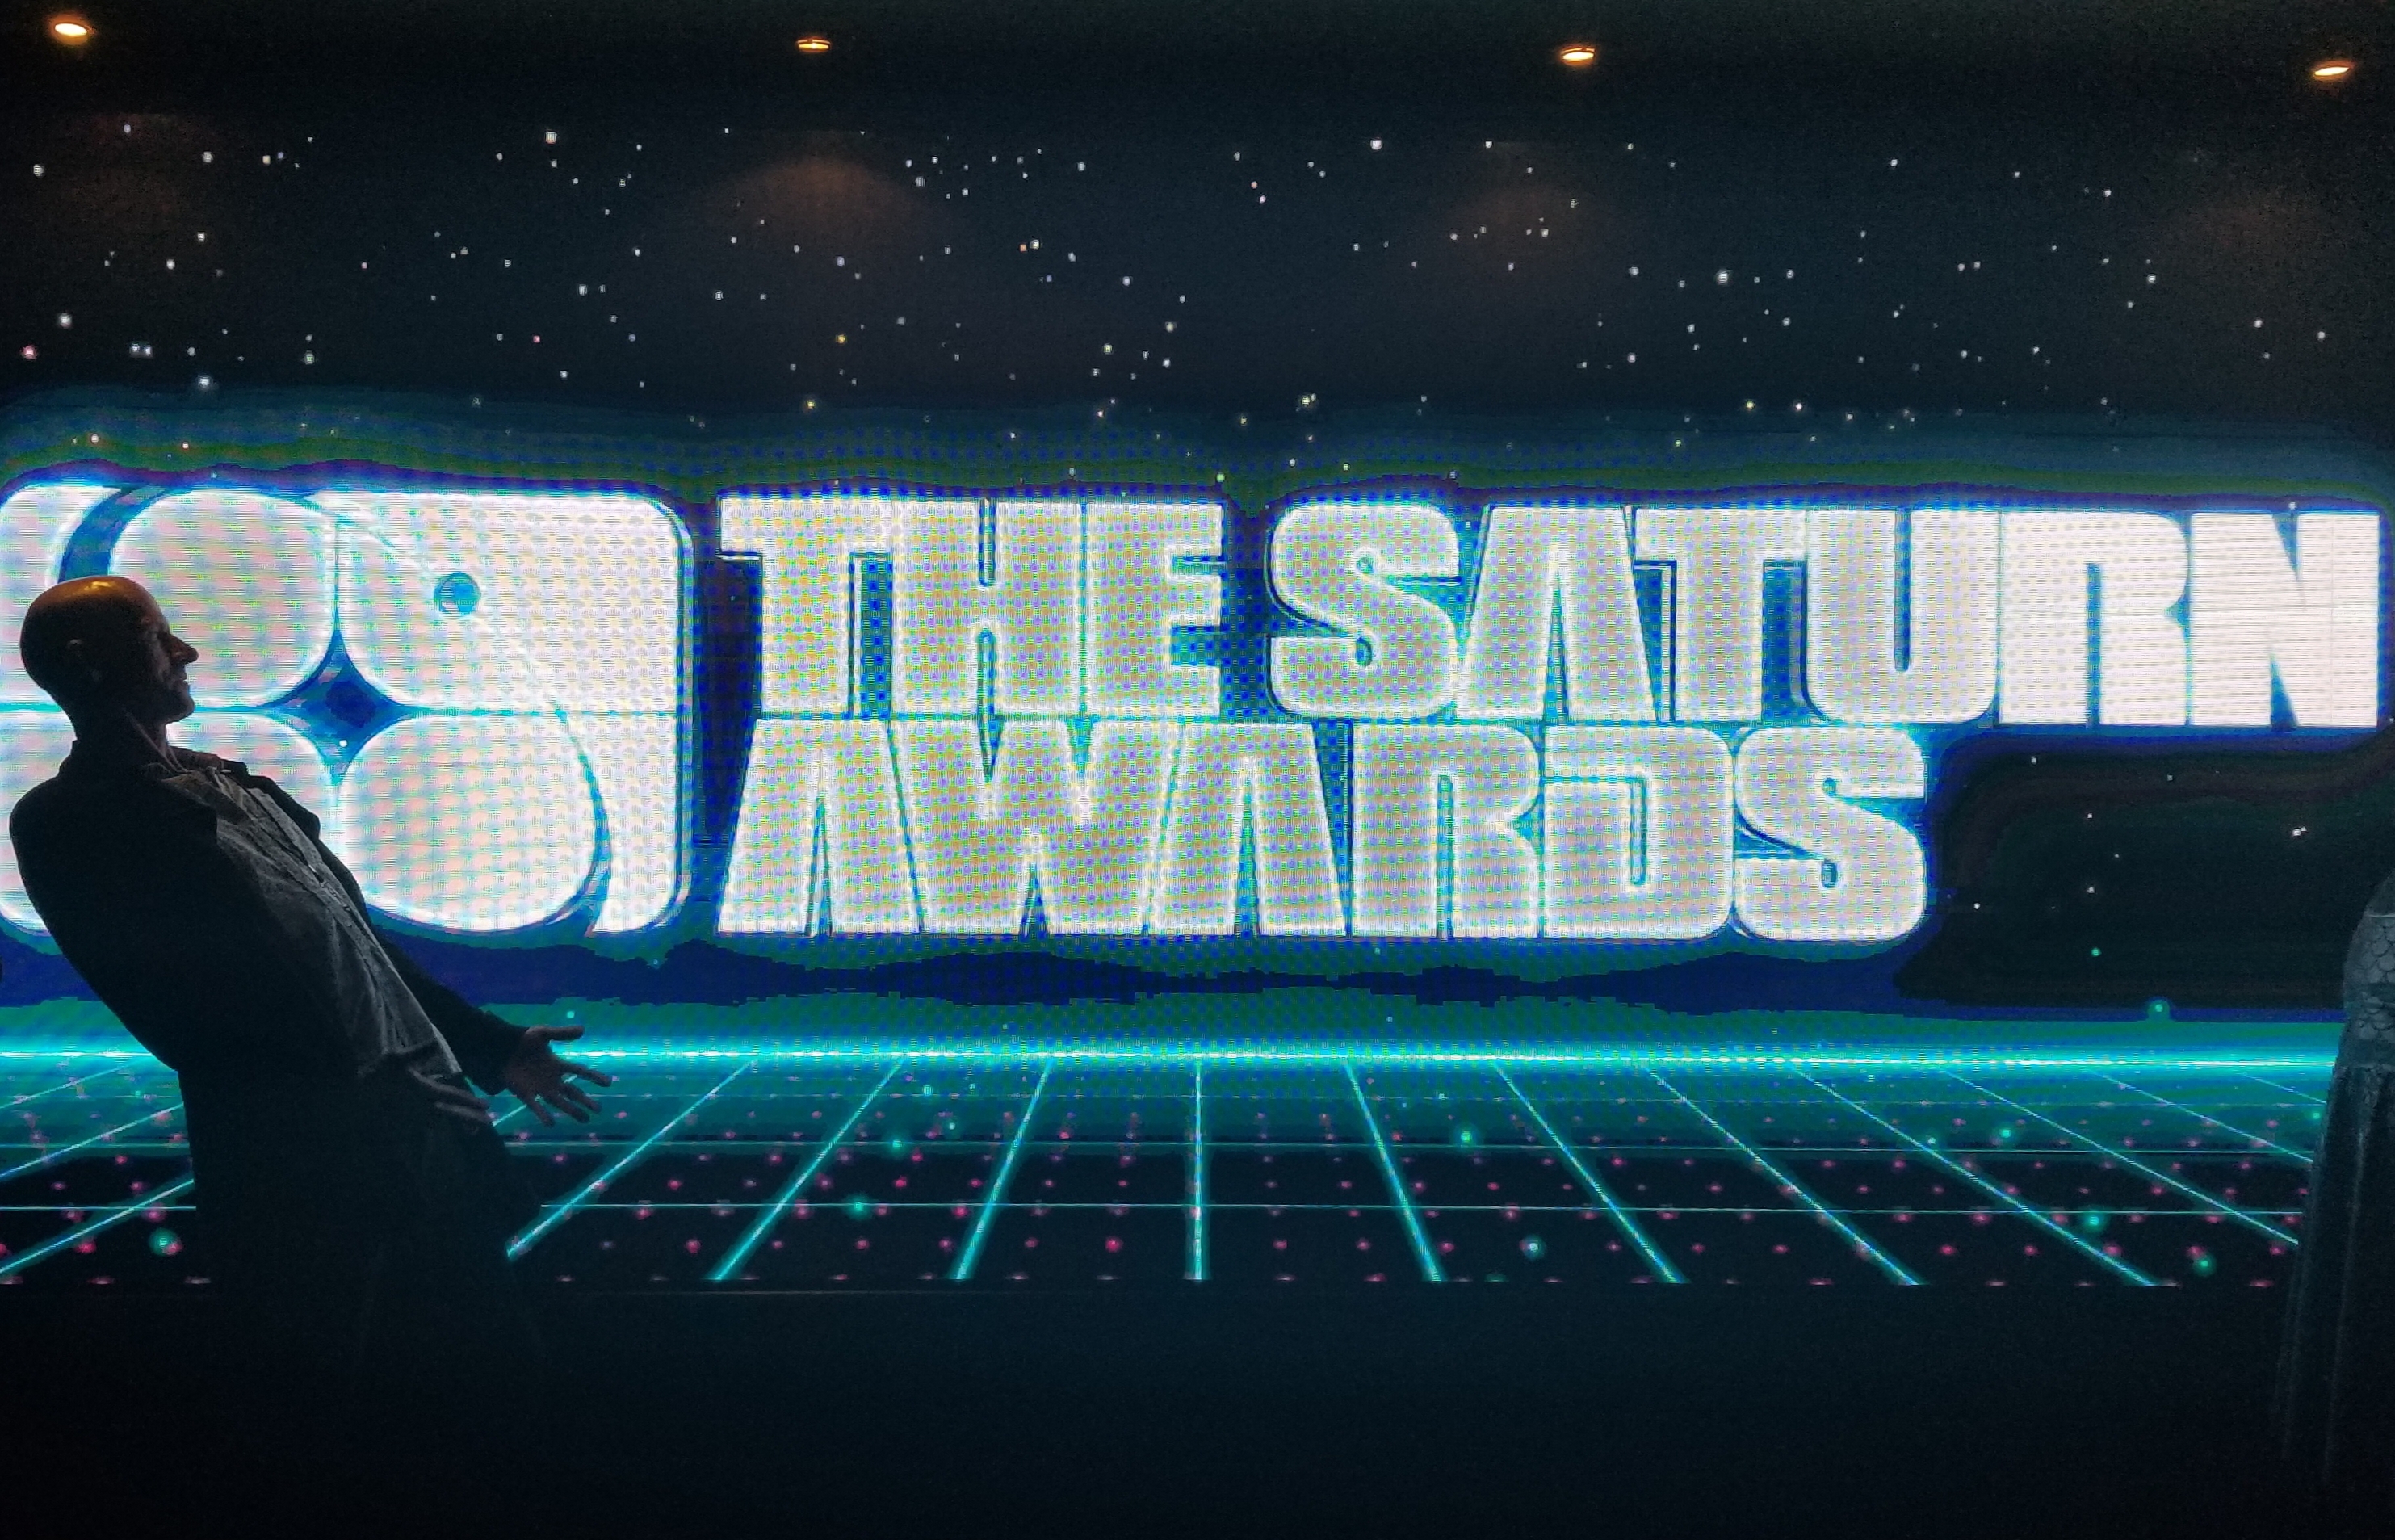 Saturn Awards Photos